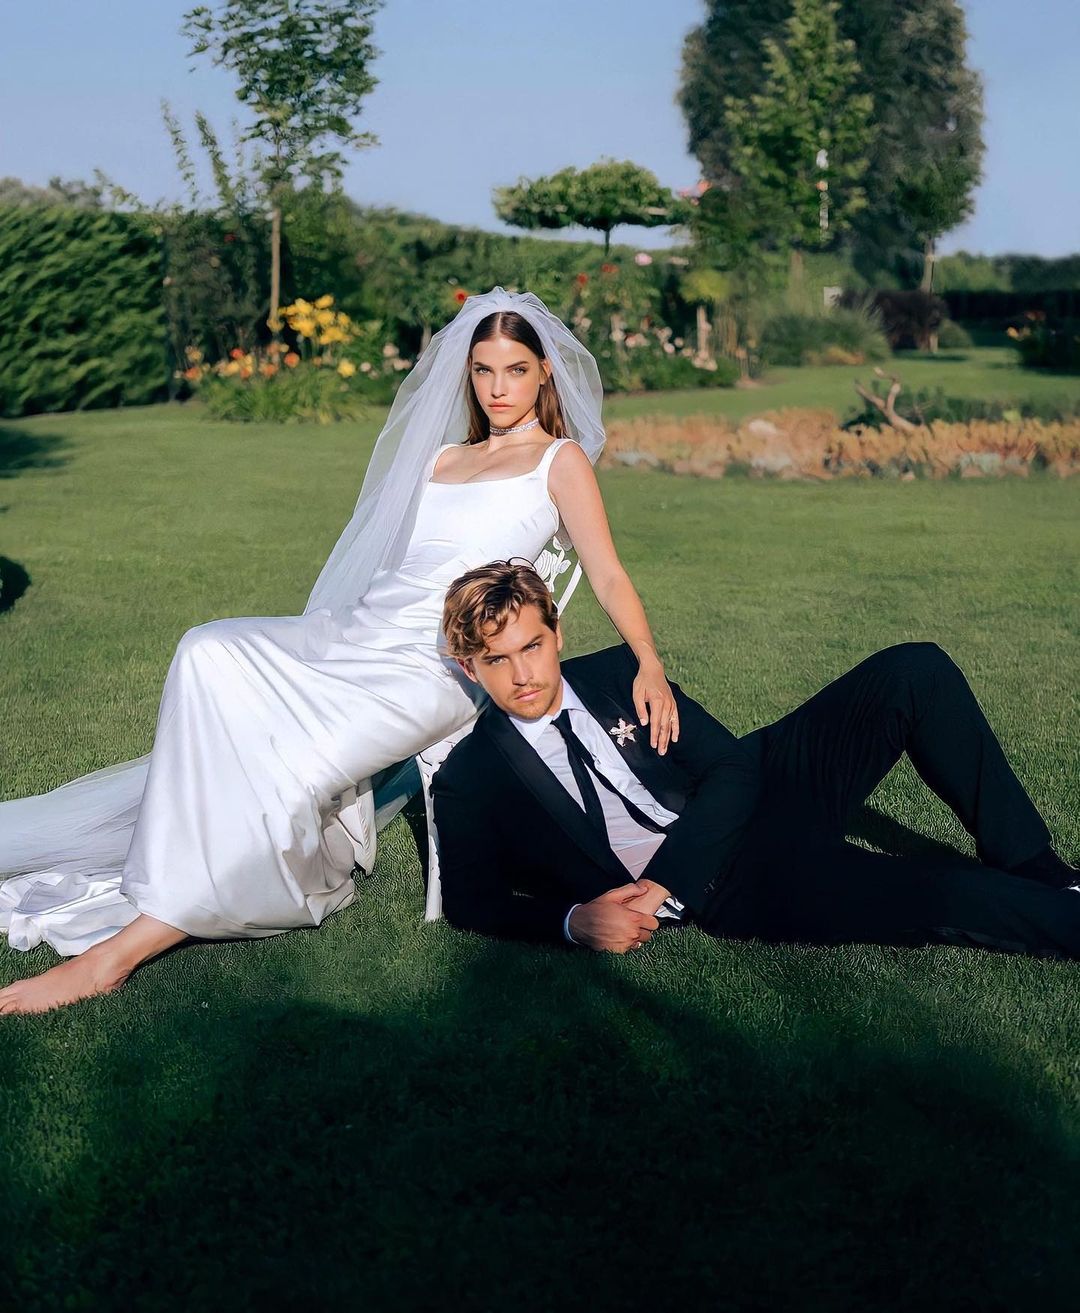 barbara diện váy cưới trên thảm cỏ xanh